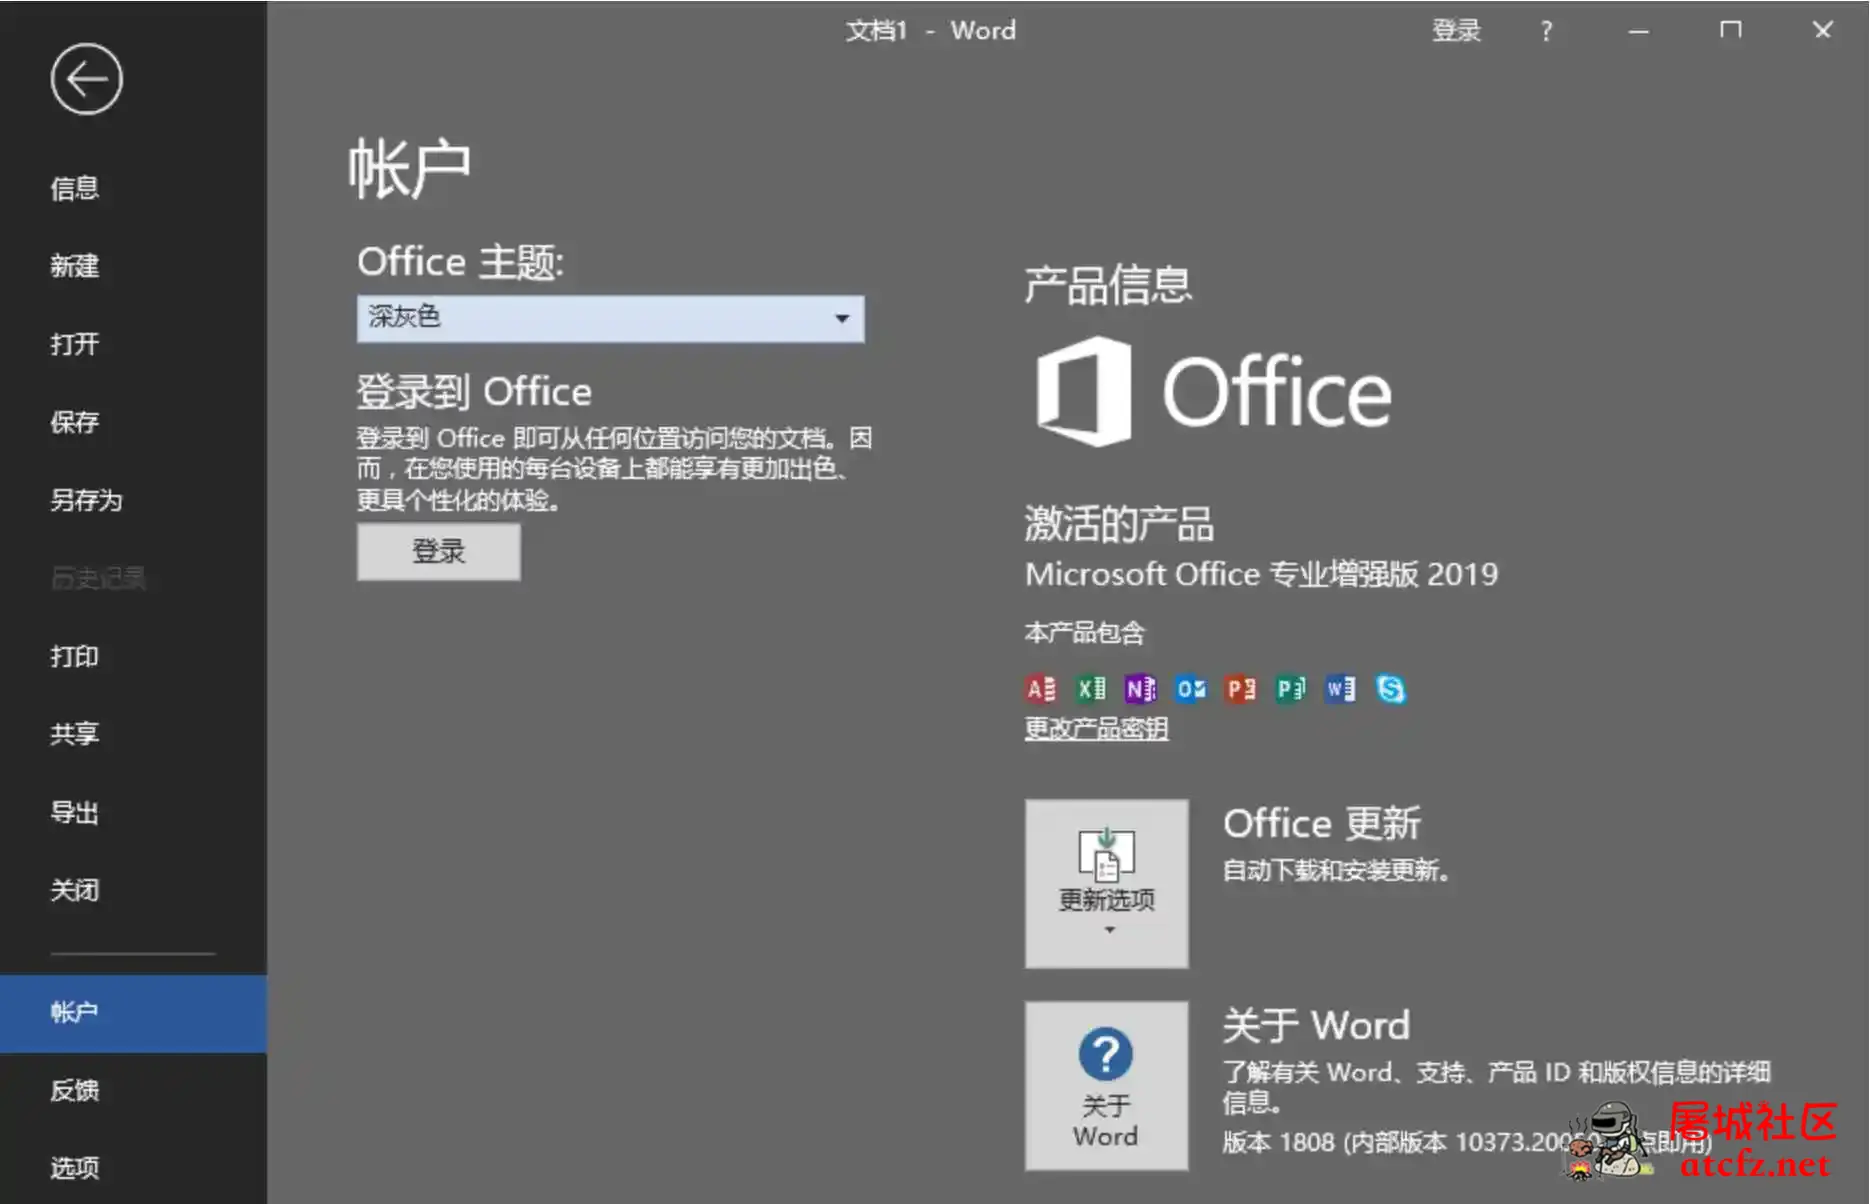 微软Office2019批量授权版批量授权商业版工具 屠城辅助网www.tcfz1.com1172